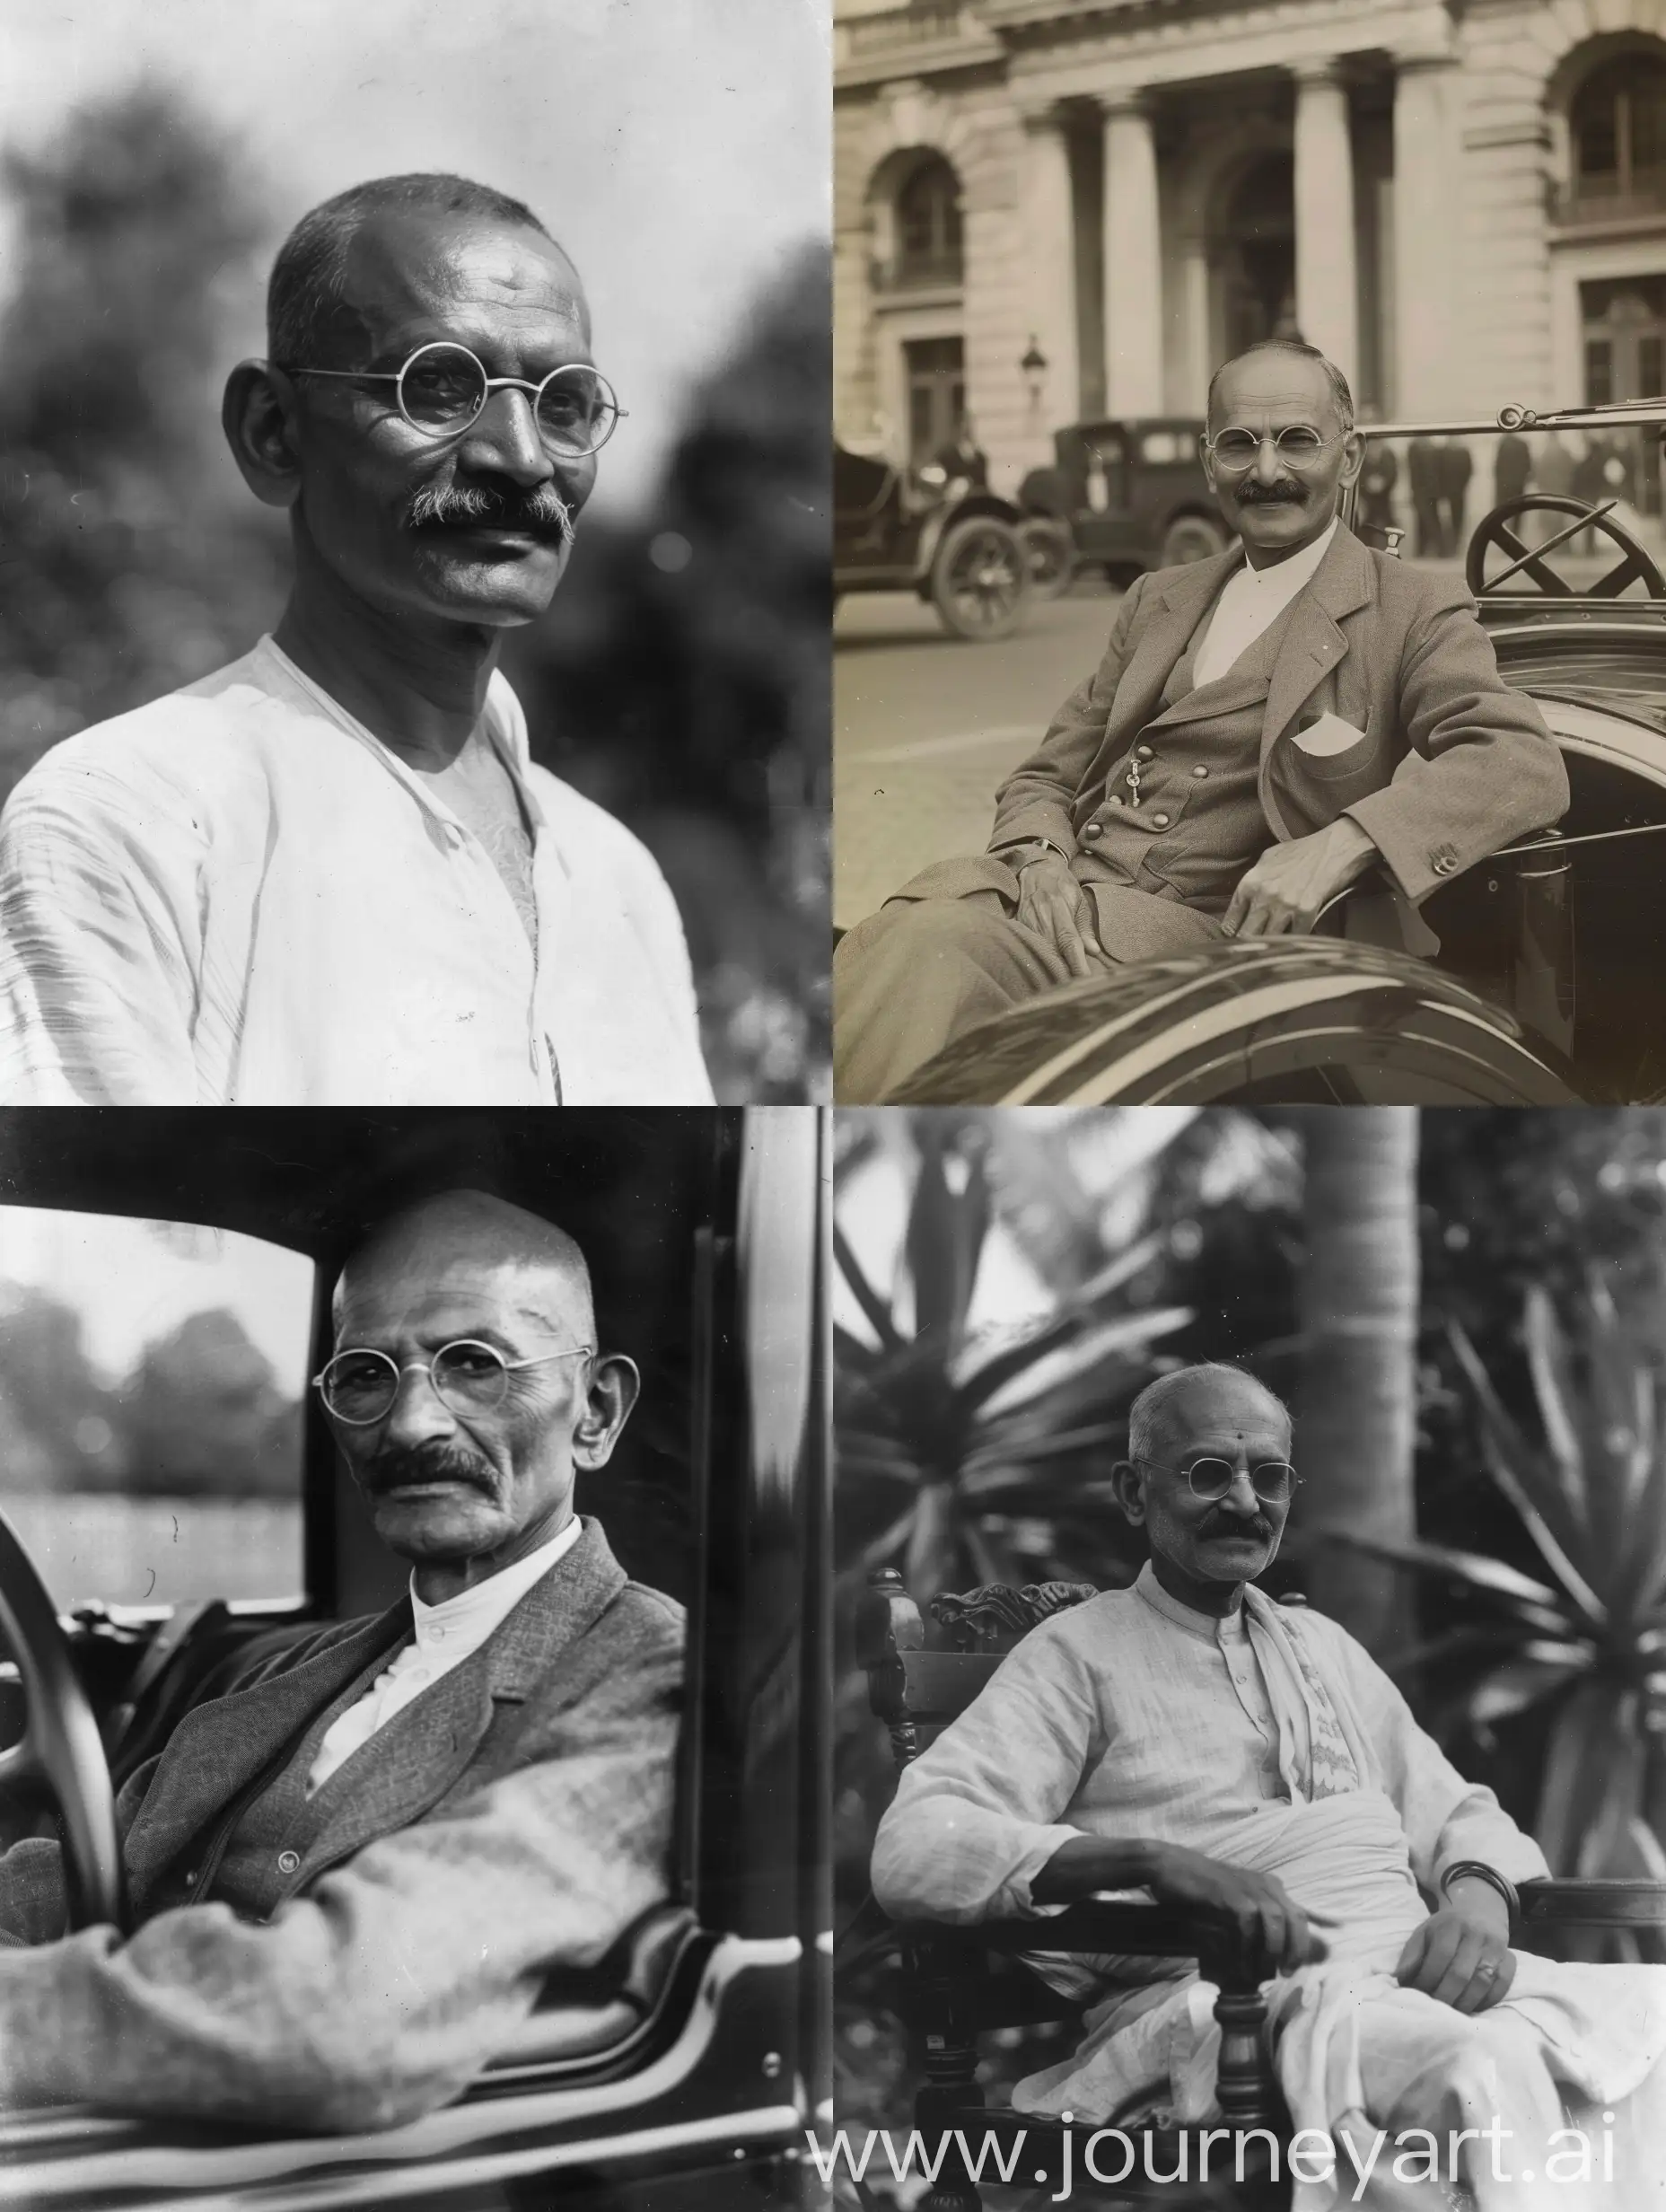 Mahatma-Gandhi-Statue-in-Leeds-with-Renault-Car